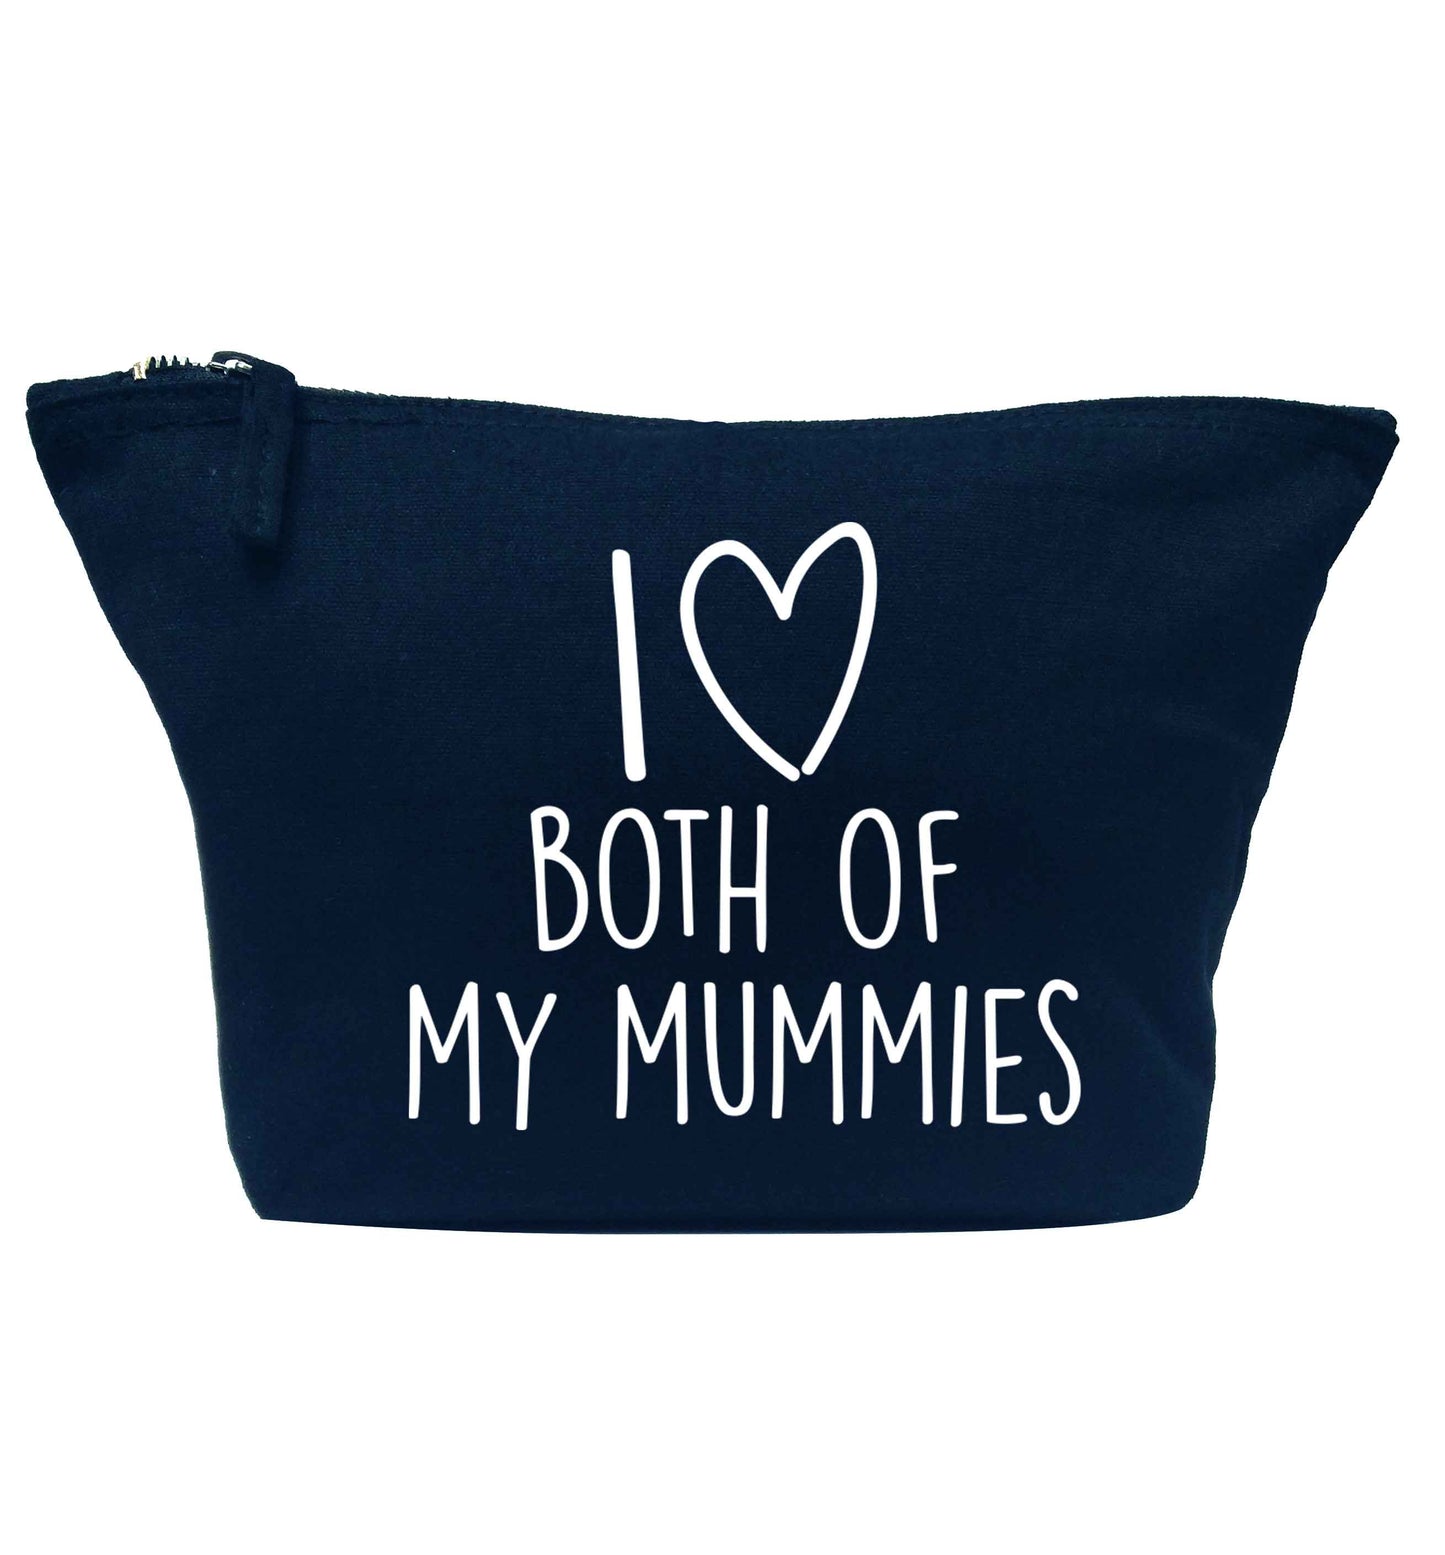 I love both of my mummies navy makeup bag